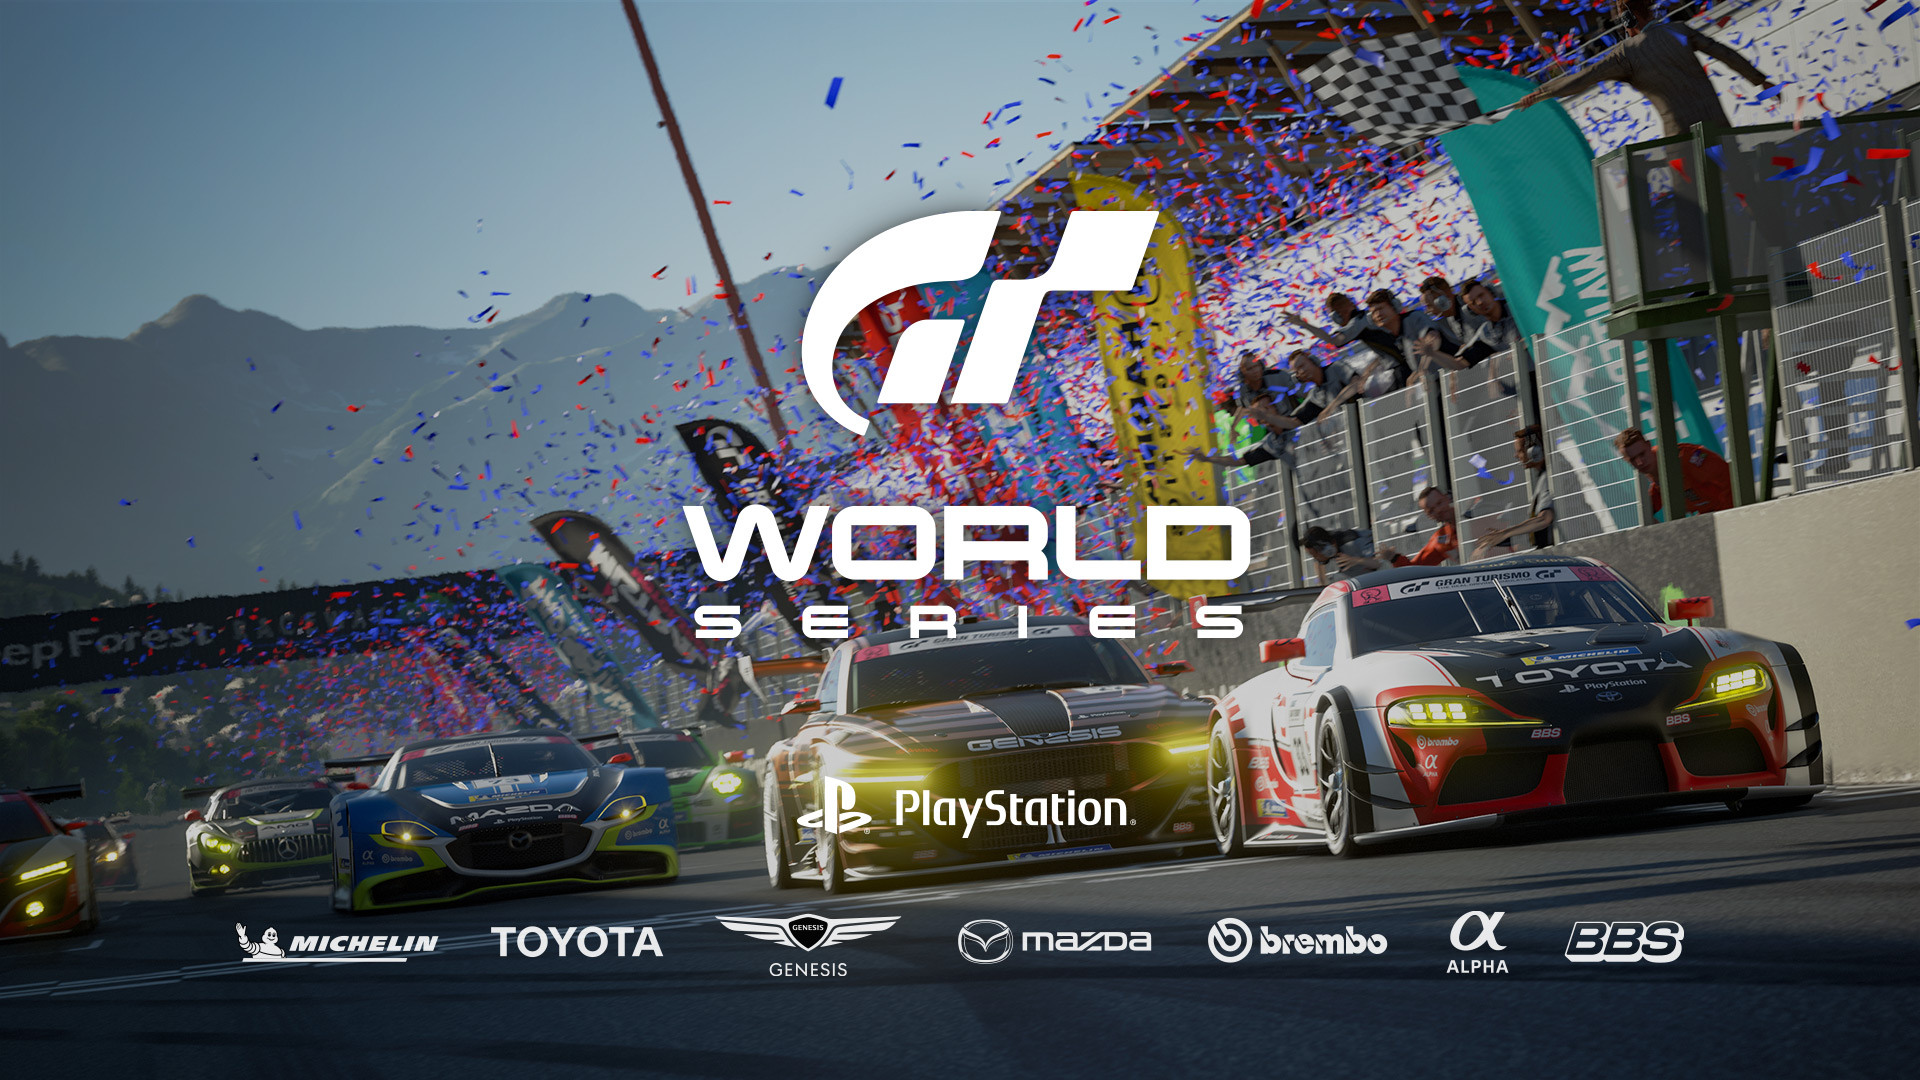 Plus que deux courses encore ! La manche 3 des Gran Turismo World Series  2022 sera diffusée les 6 et 13 novembre ! 